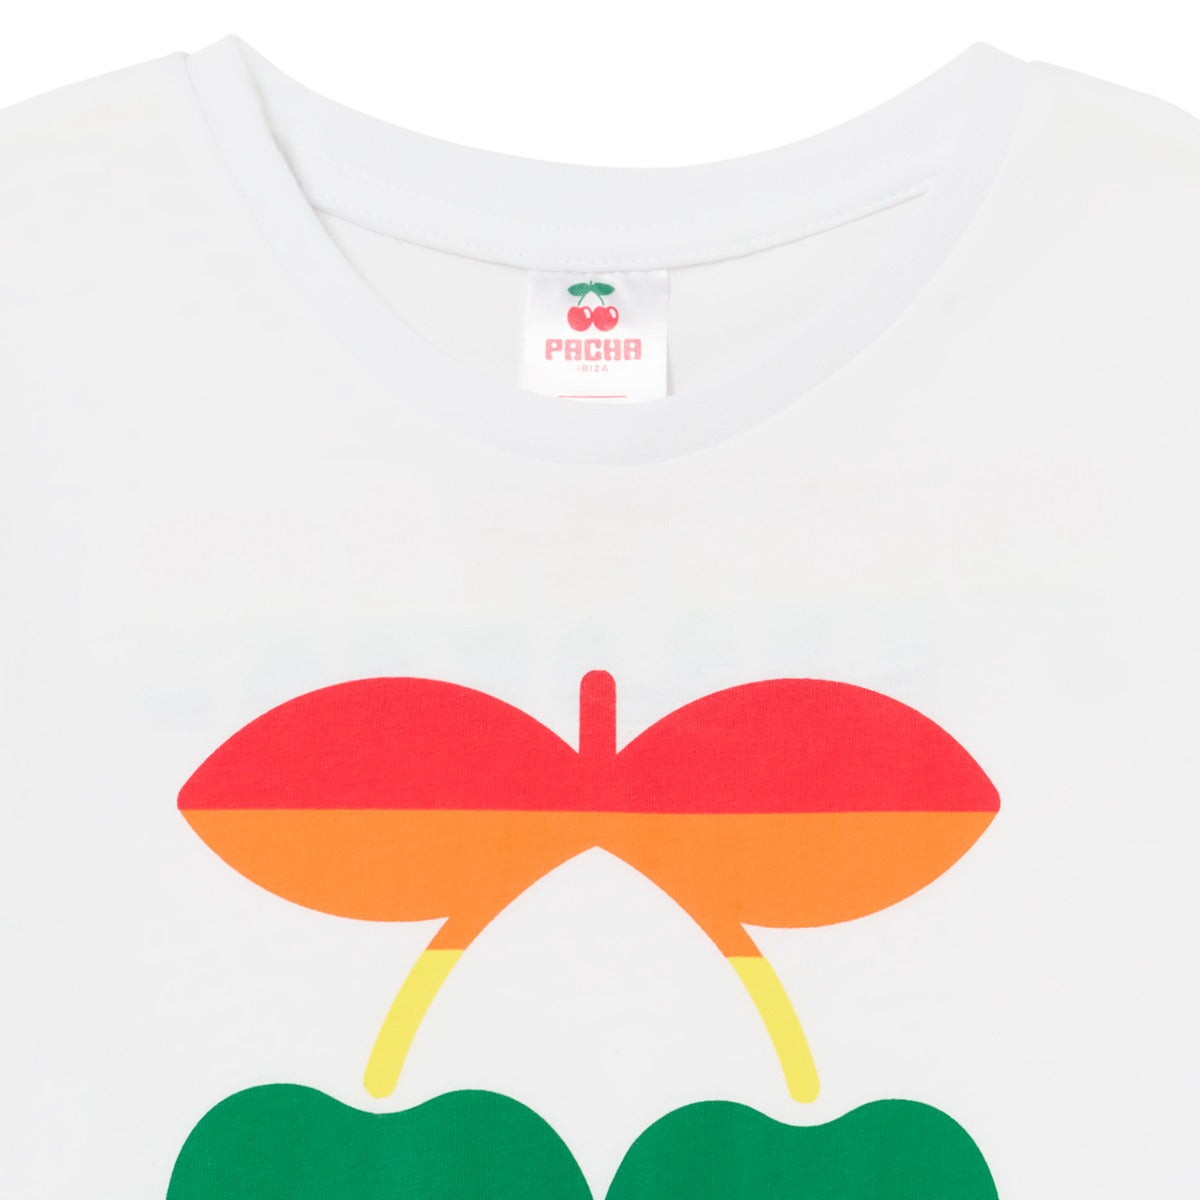 Regenbogen-T-Shirt